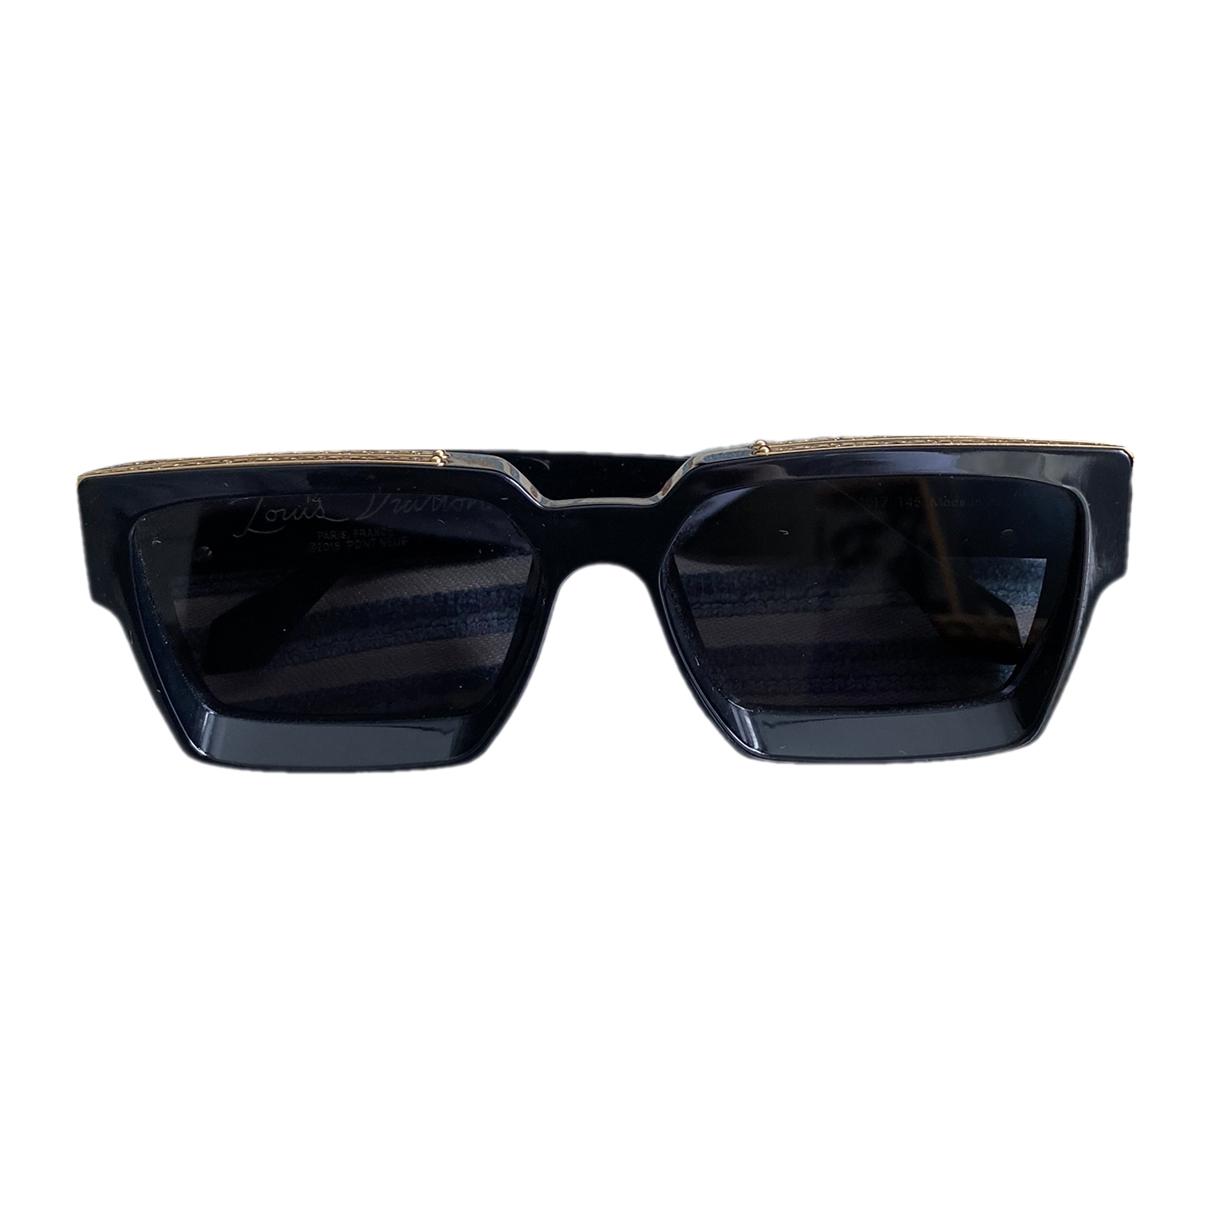 Sunglasses Louis Vuitton x Nigo Black in Plastic - 23437637